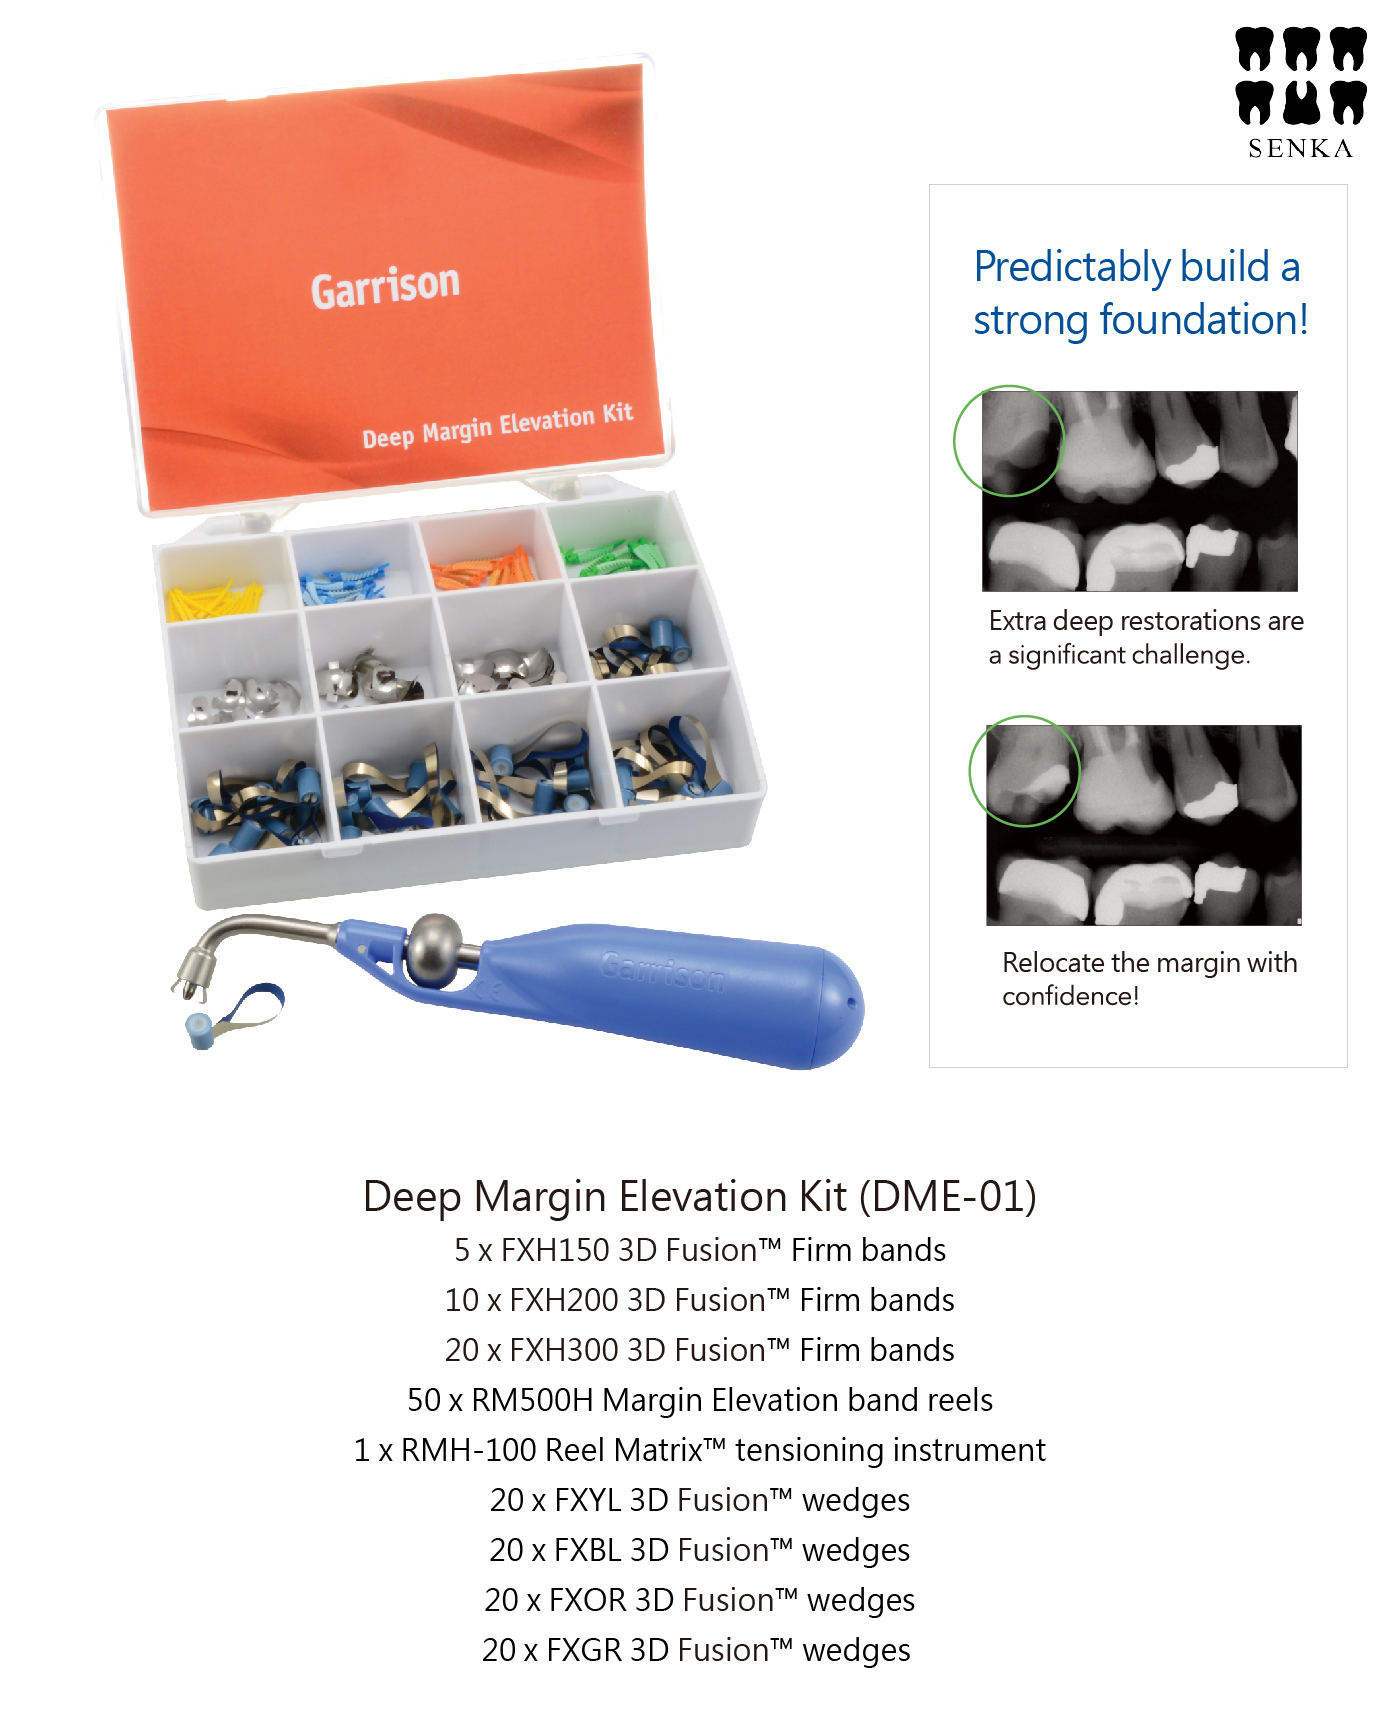 Deep Margin Elevation Kit – SENKA Dental Supply